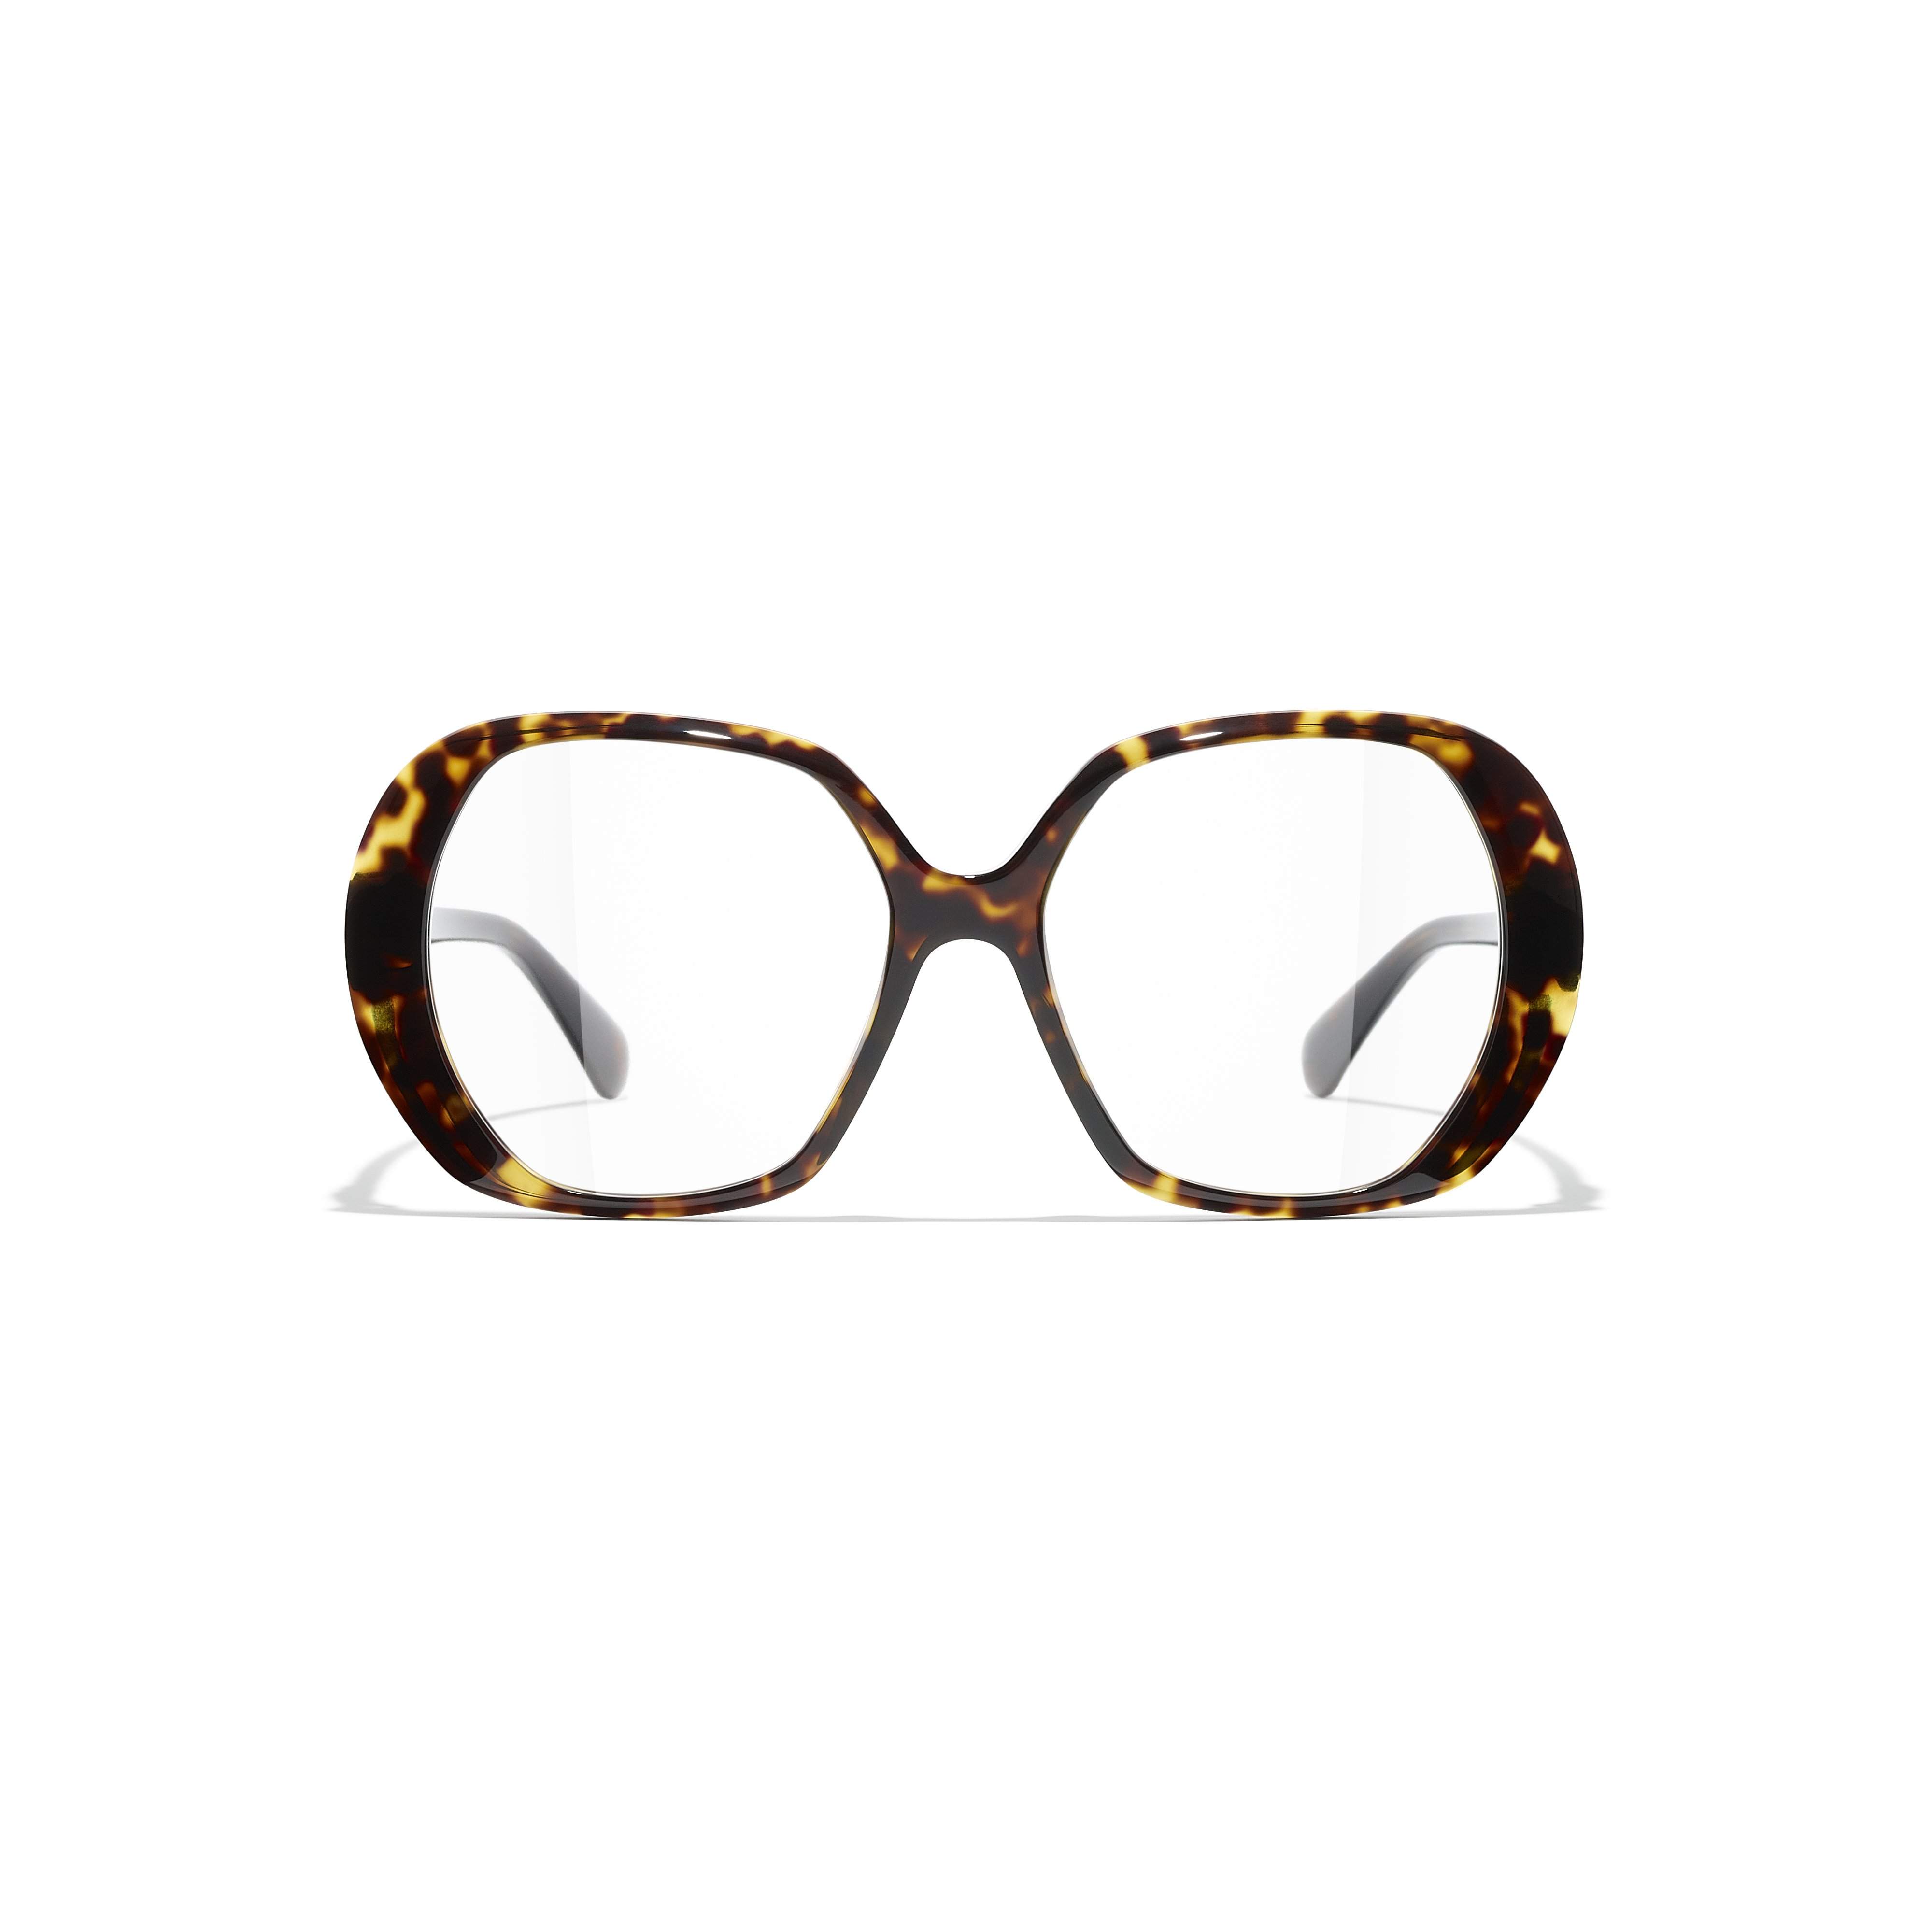 Best 25+ Deals for Chanel Prescription Glasses